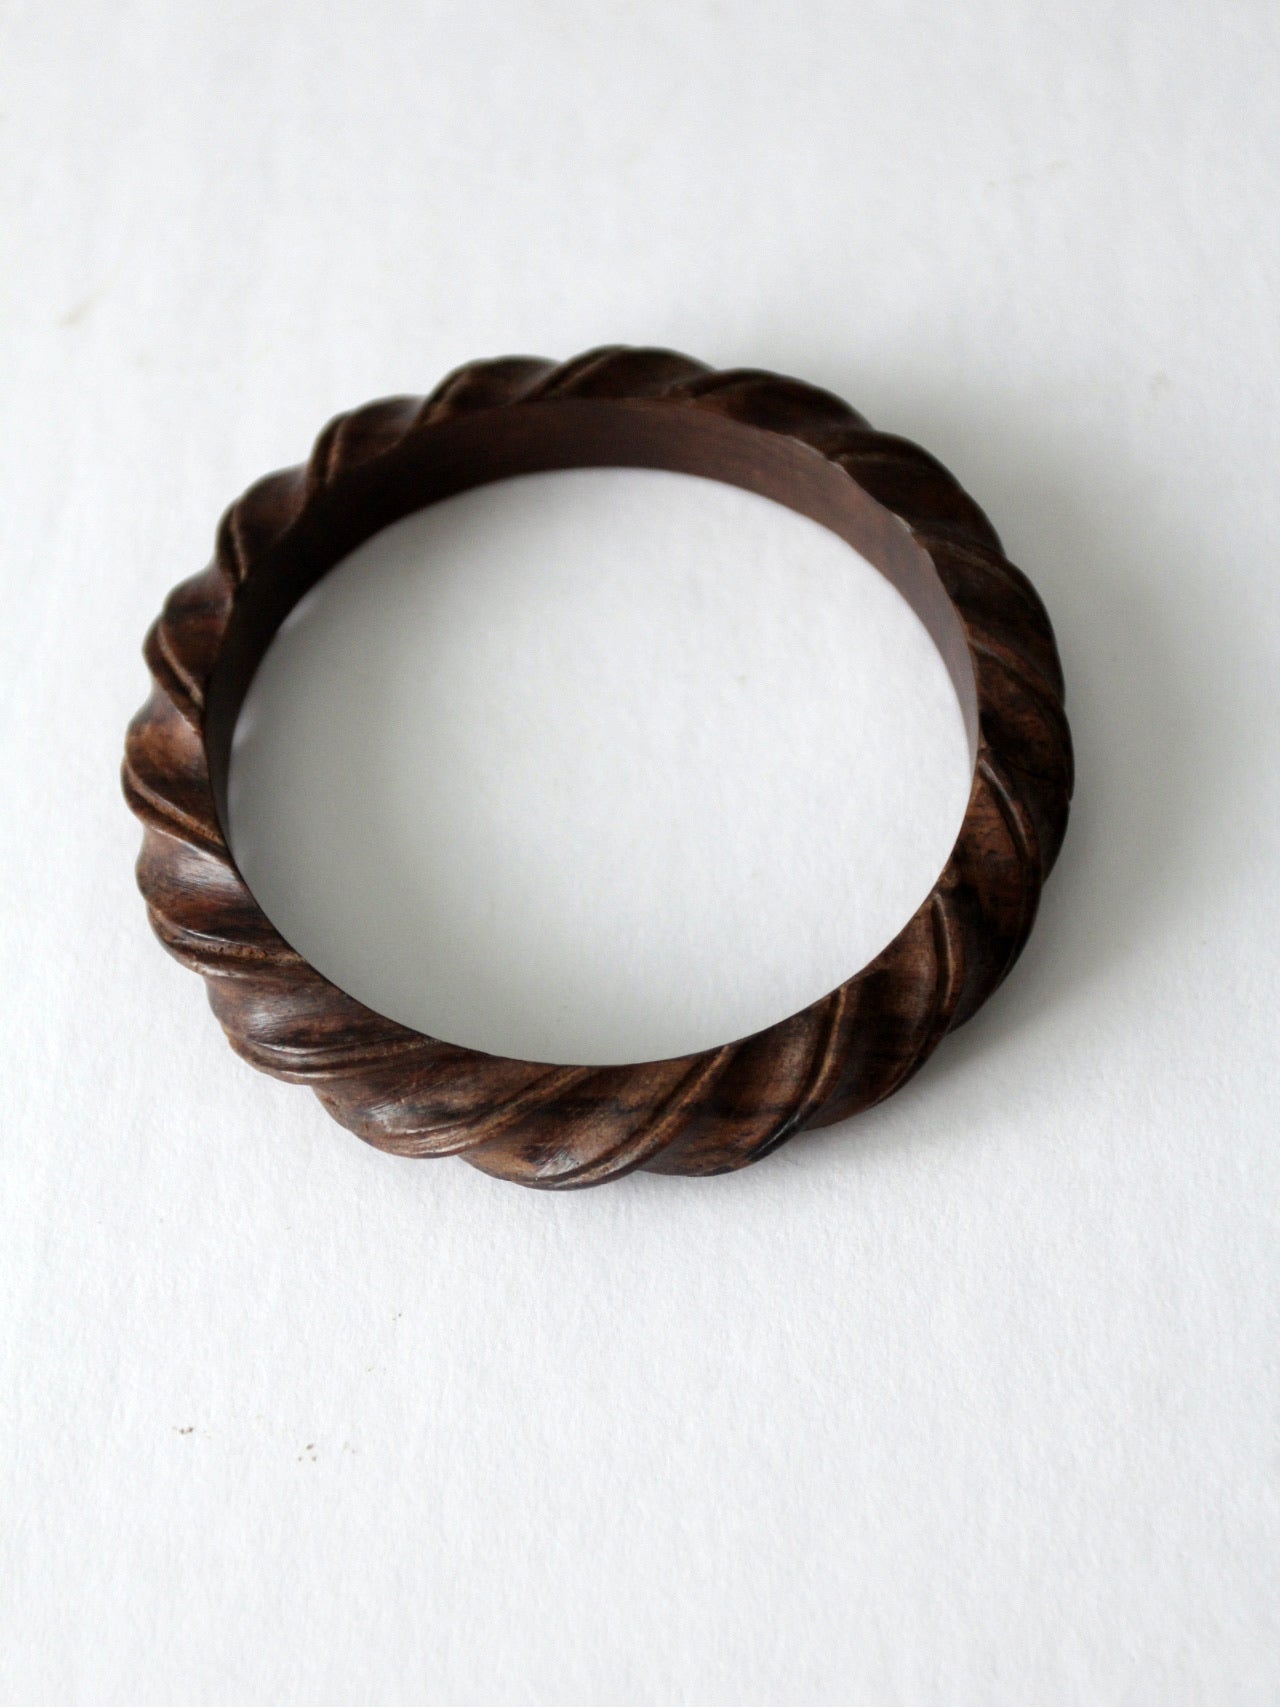 vintage carved wood bangle bracelet